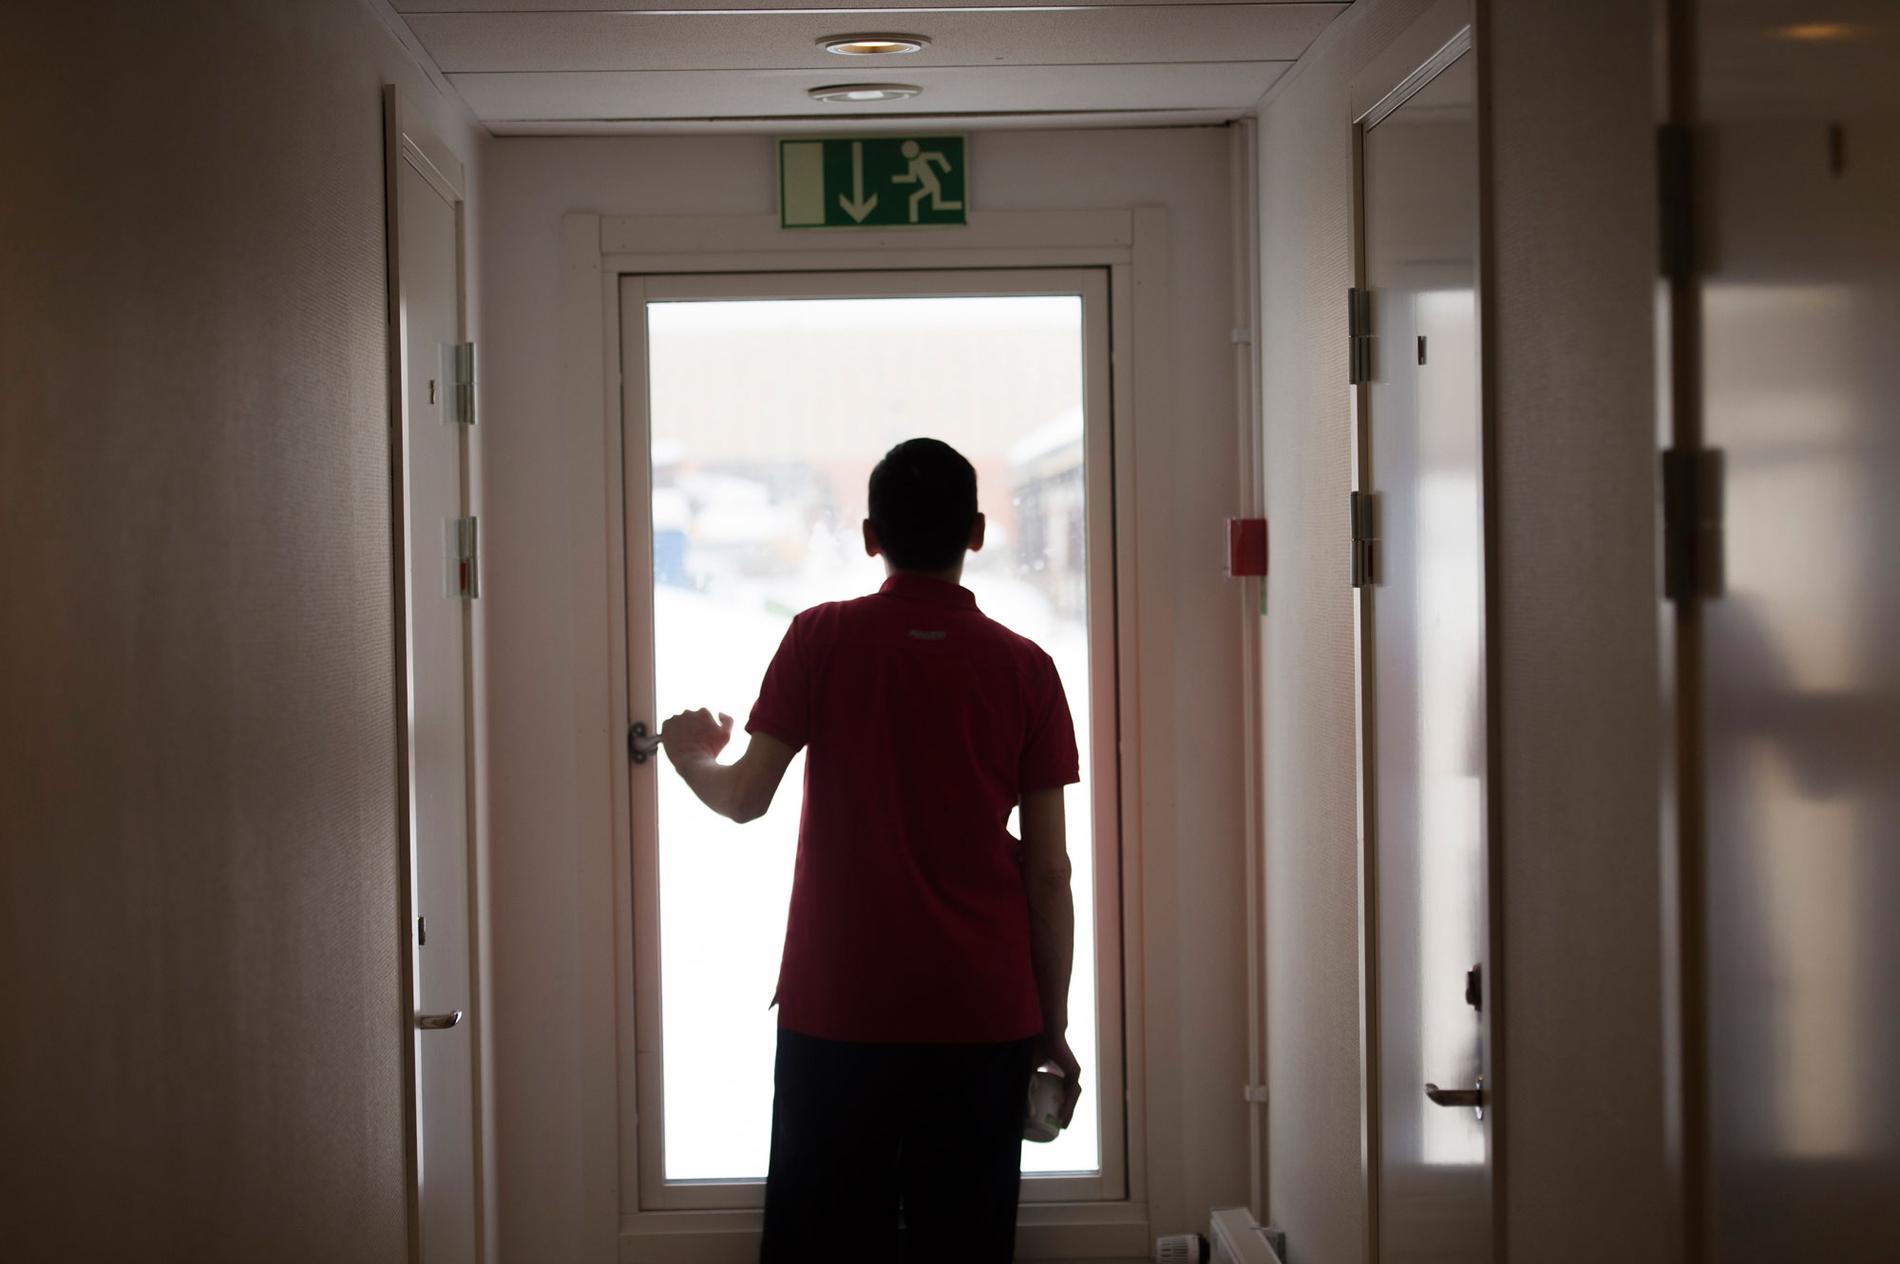 Minderåriga som söker asyl i Sverige får inte skickas tillbaka till länder där det inte finns ett ordnat mottagande. Trots det får flera hundra ensamkommande barn från sådana länder nu avvisningsbeslut enligt en ny praxis hos Migrationsverket, rapporterar Ekot.